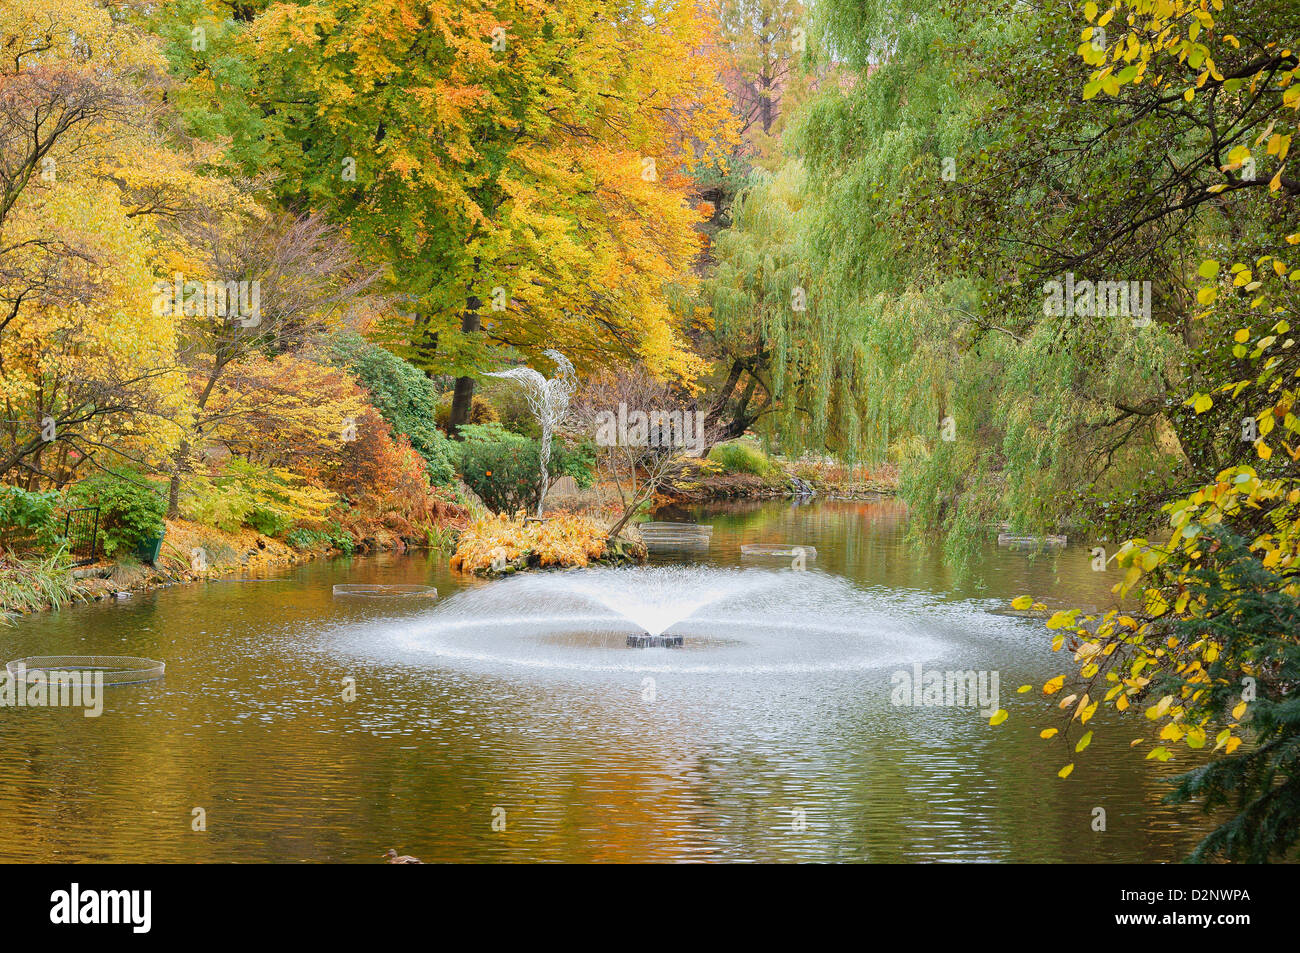 Le silence de l'eau paisible tranquille avec les feuilles tombées en automne Jardin botanique de Wroclaw Banque D'Images